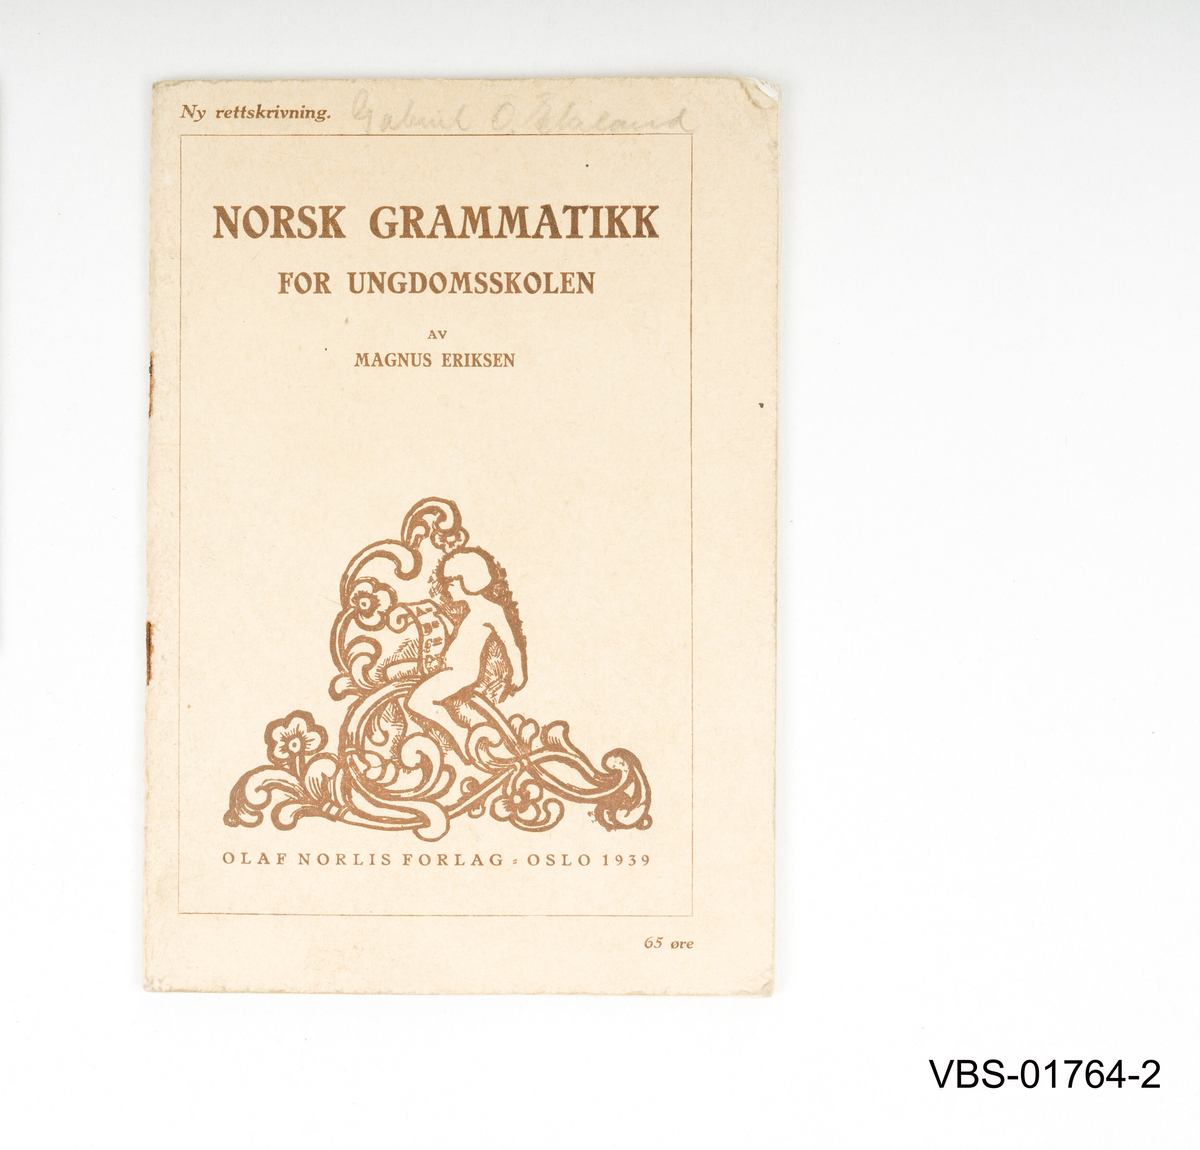 Norsk Grammatikk hefte. 
37 sider, utgitt og trykt i Oslo 1939